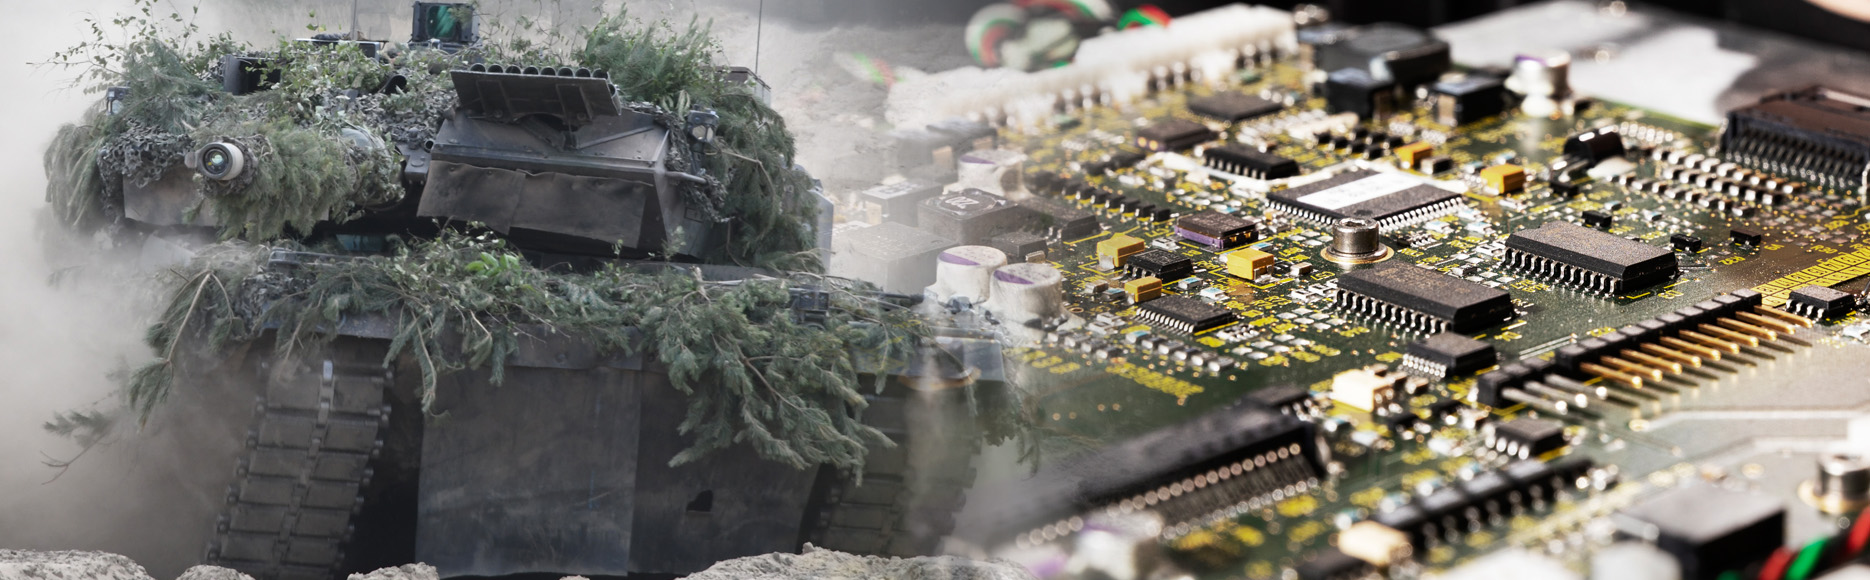 LEOPARD 2 Kampfpanzer fährt durch sandiges Gelände und Elektronikplatine